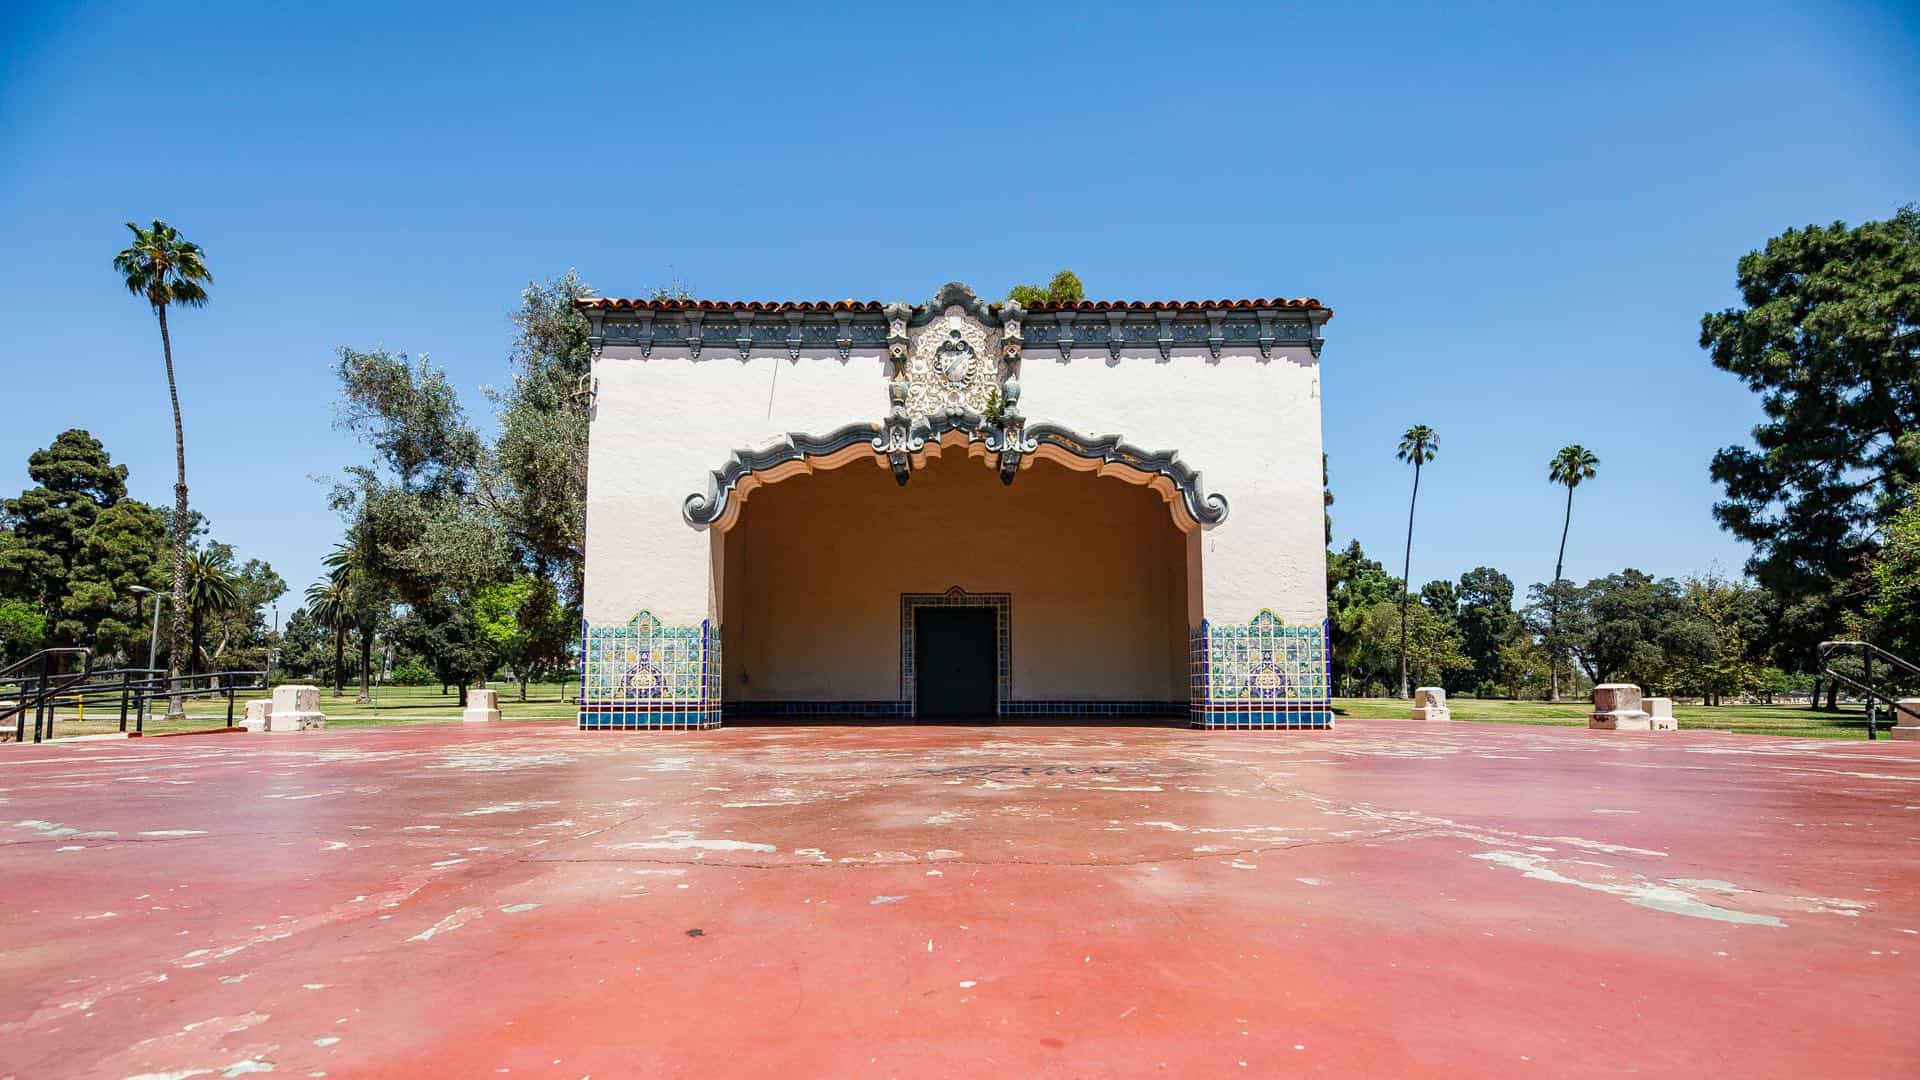 Recreation Park bandshell, Long Beach, CA